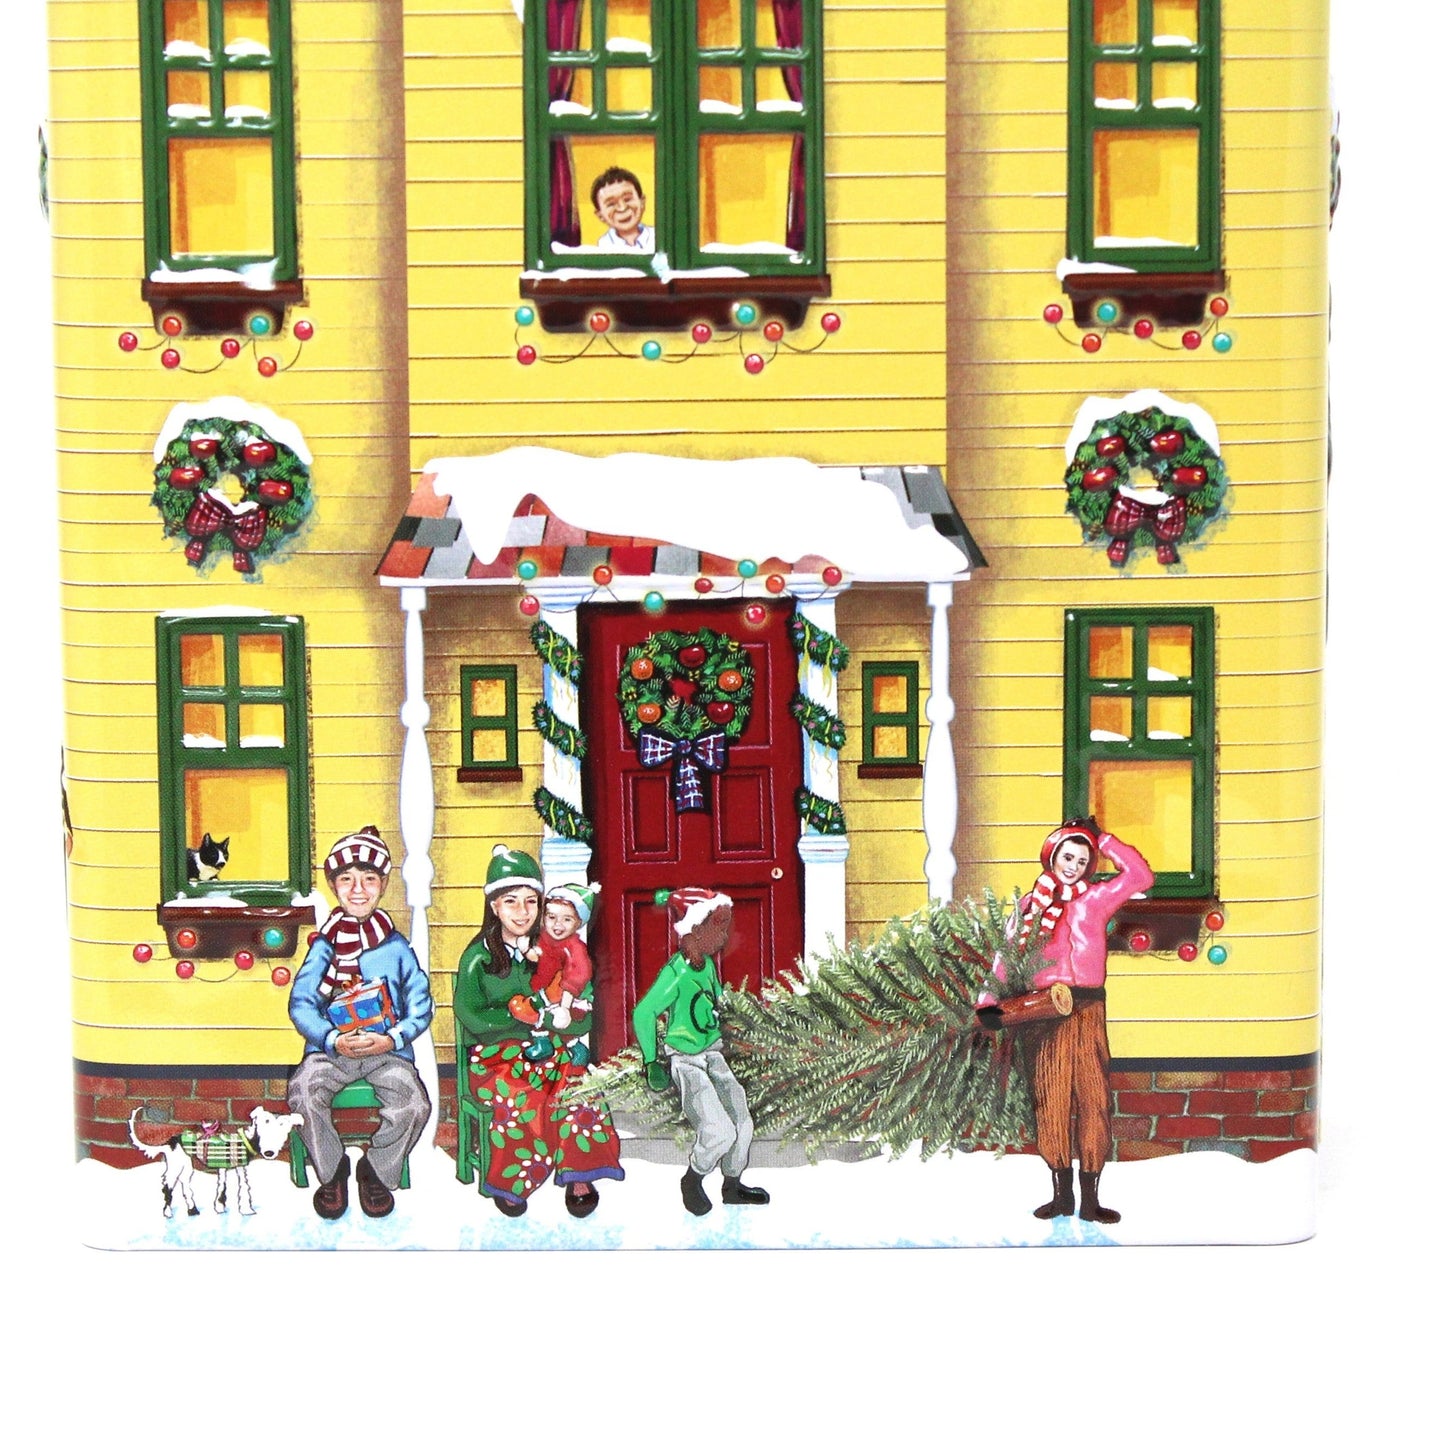 Gift Tin / Cookie Tin, Harry London, Christmas Village Tin, Yellow House